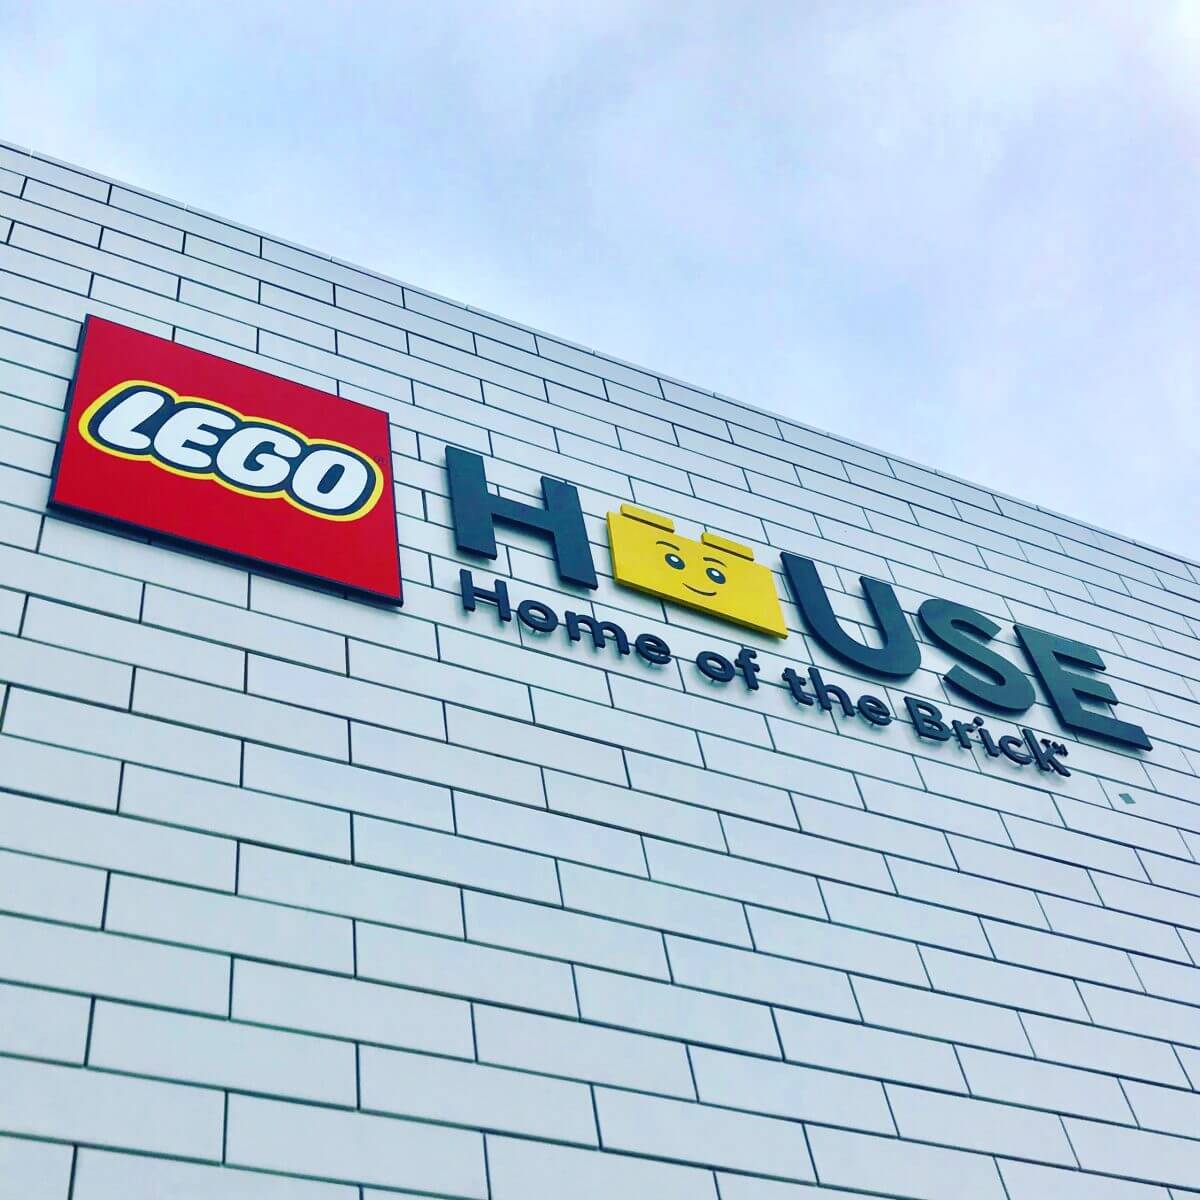 LEGO House: vlakbij Legoland en een must voor de fans 